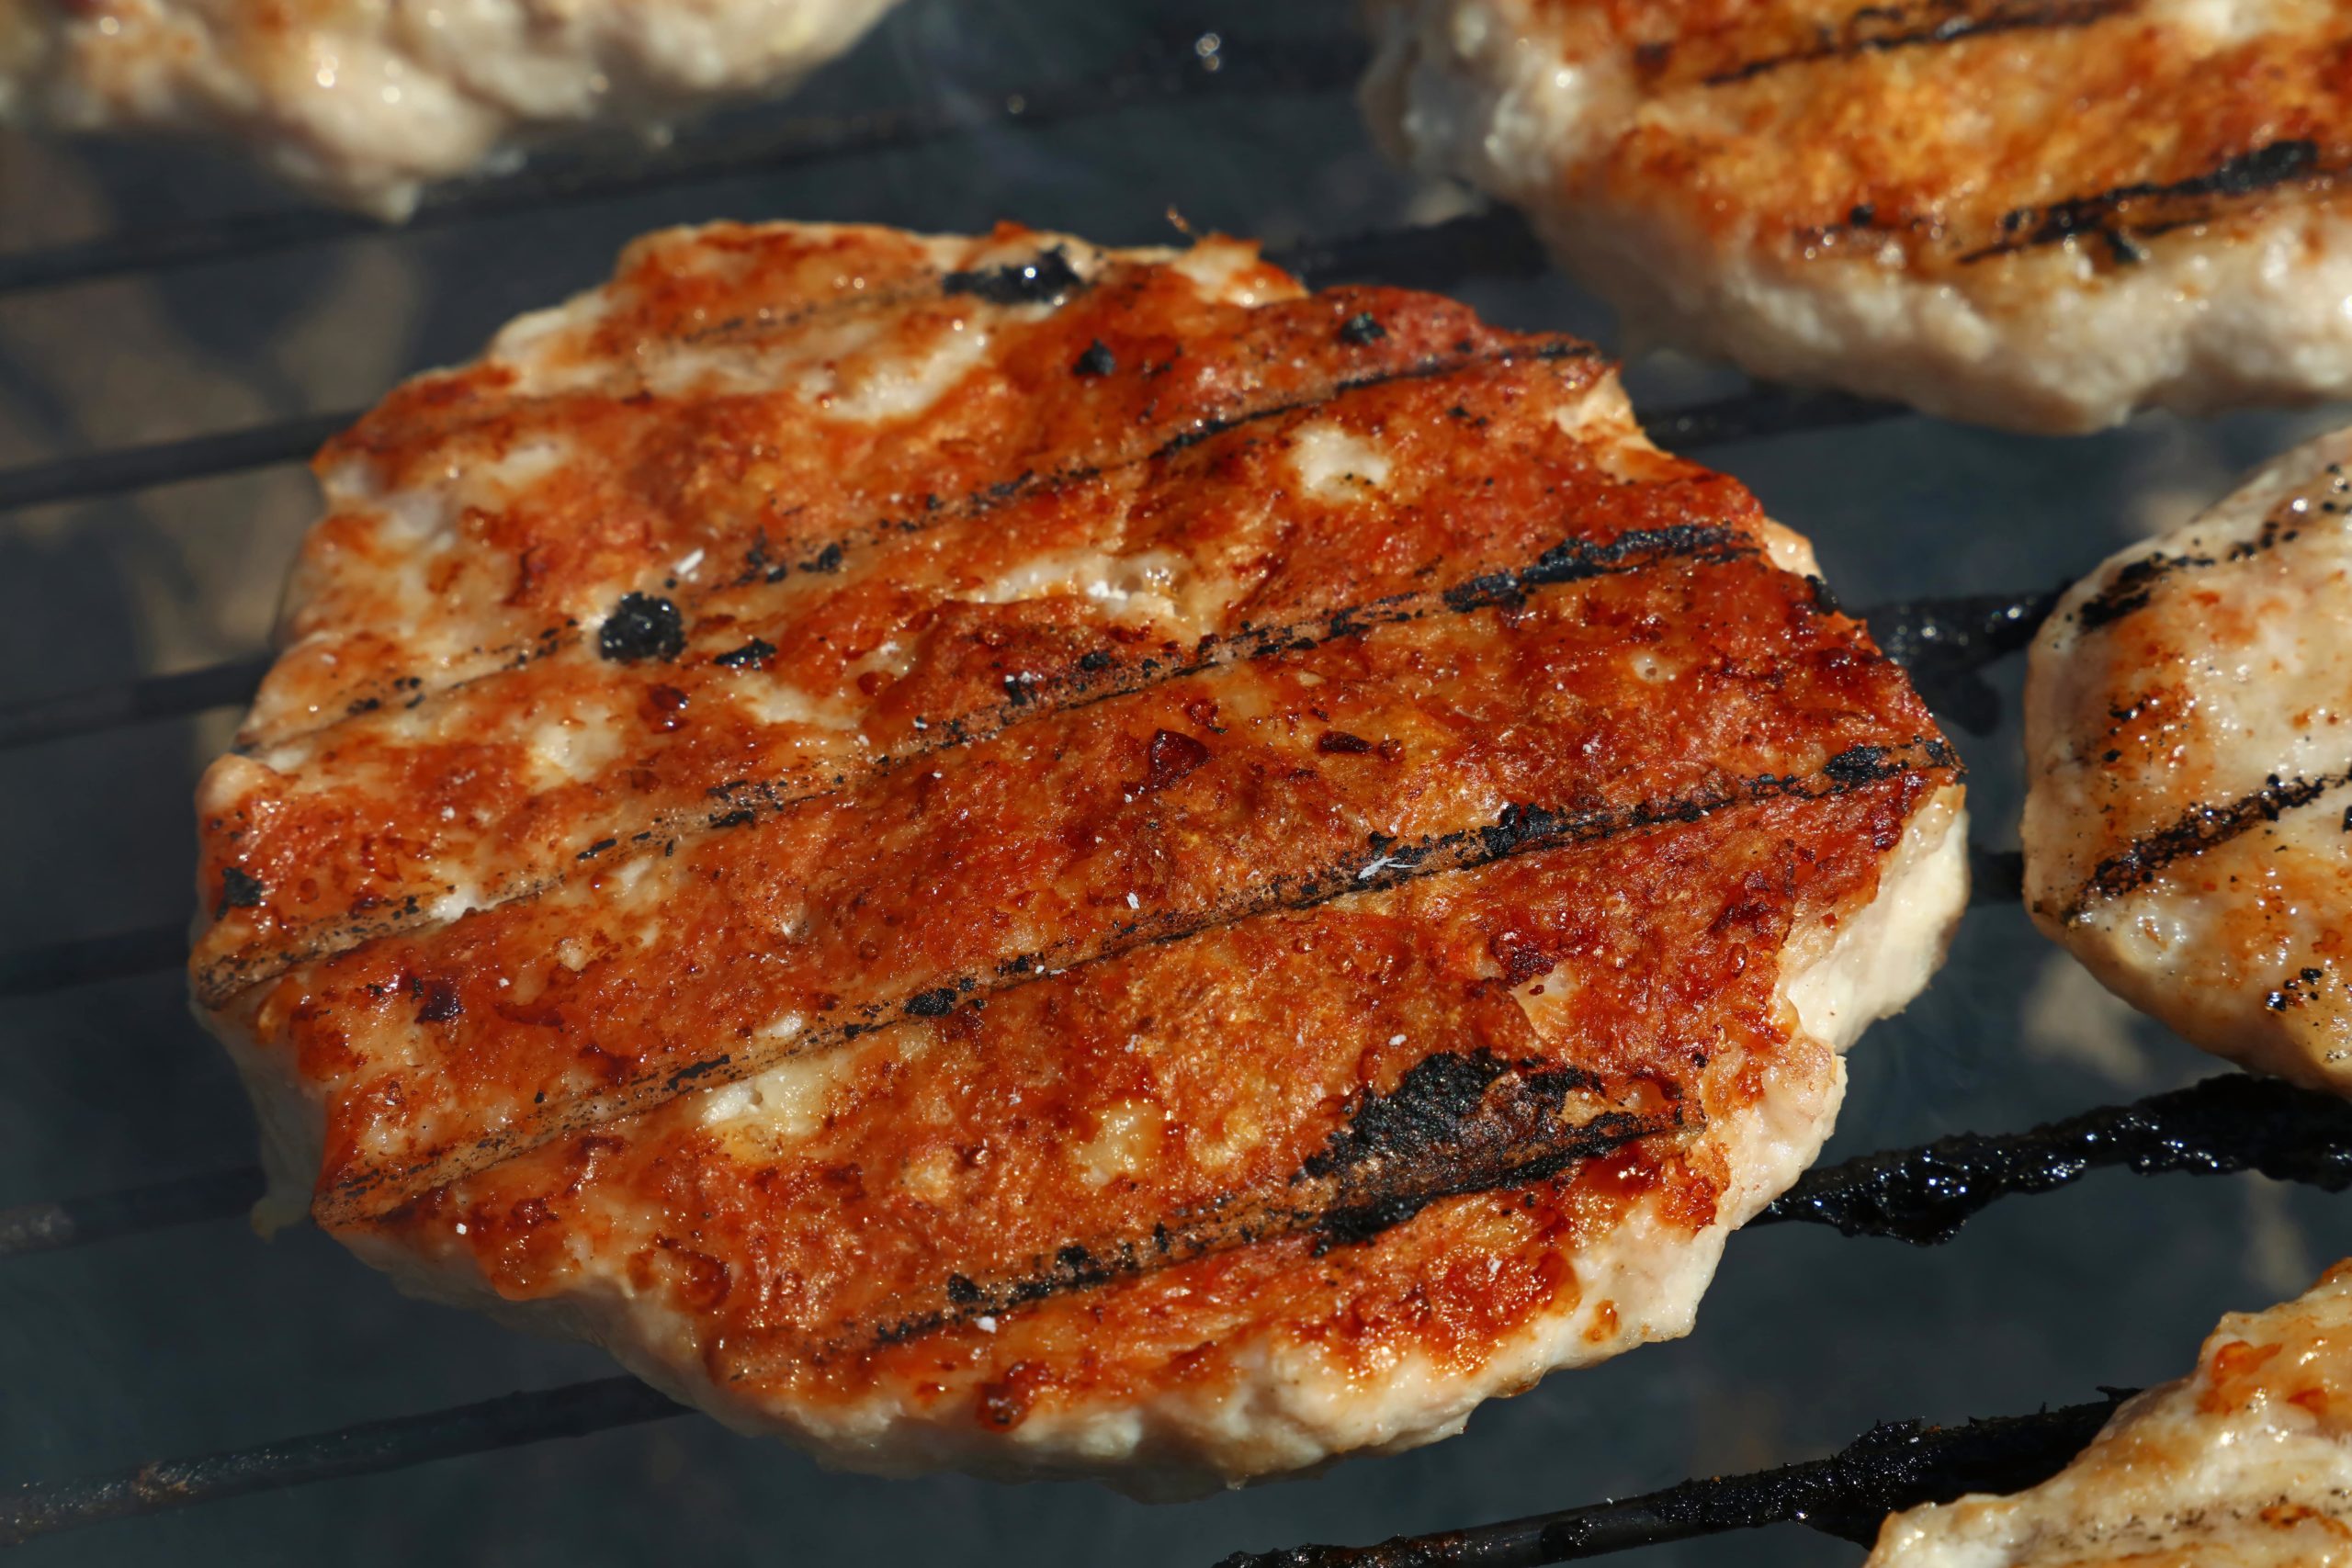 Lire la suite à propos de l’article Quelle viande utiliser pour votre hamburger ? La réponse pourrait vous surprendre